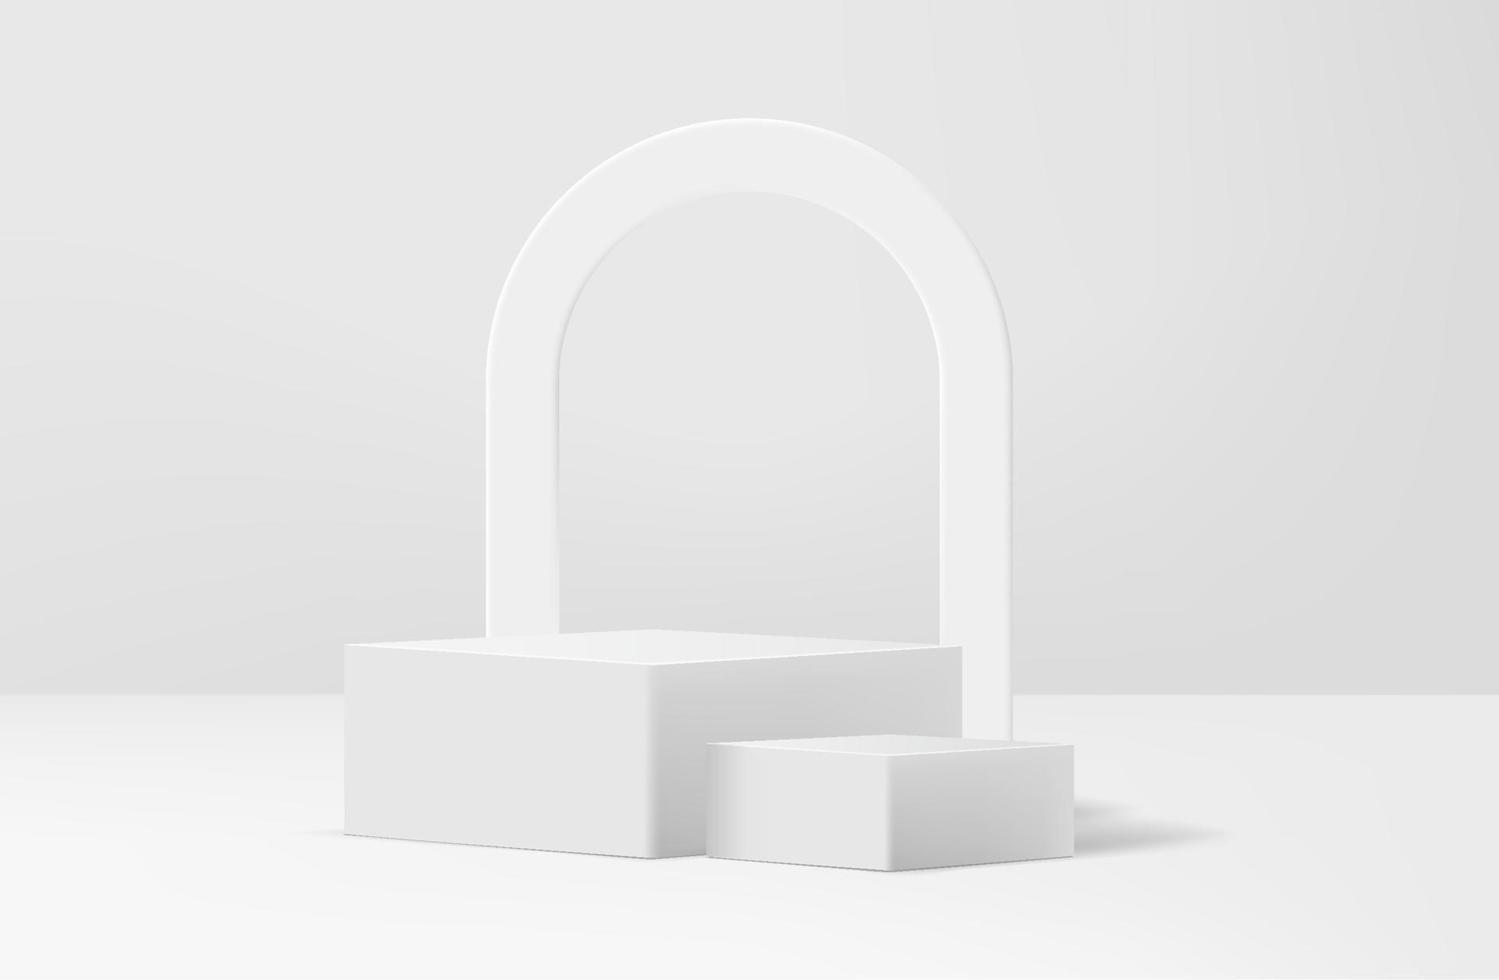 abstrakt vit realistisk 3d hörn kub piedestal podium med båge form bakgrund och skugga täcka över. abstrakt vektor tolkning geometrisk plattform. produkt visa presentation. minimal scen visa fall